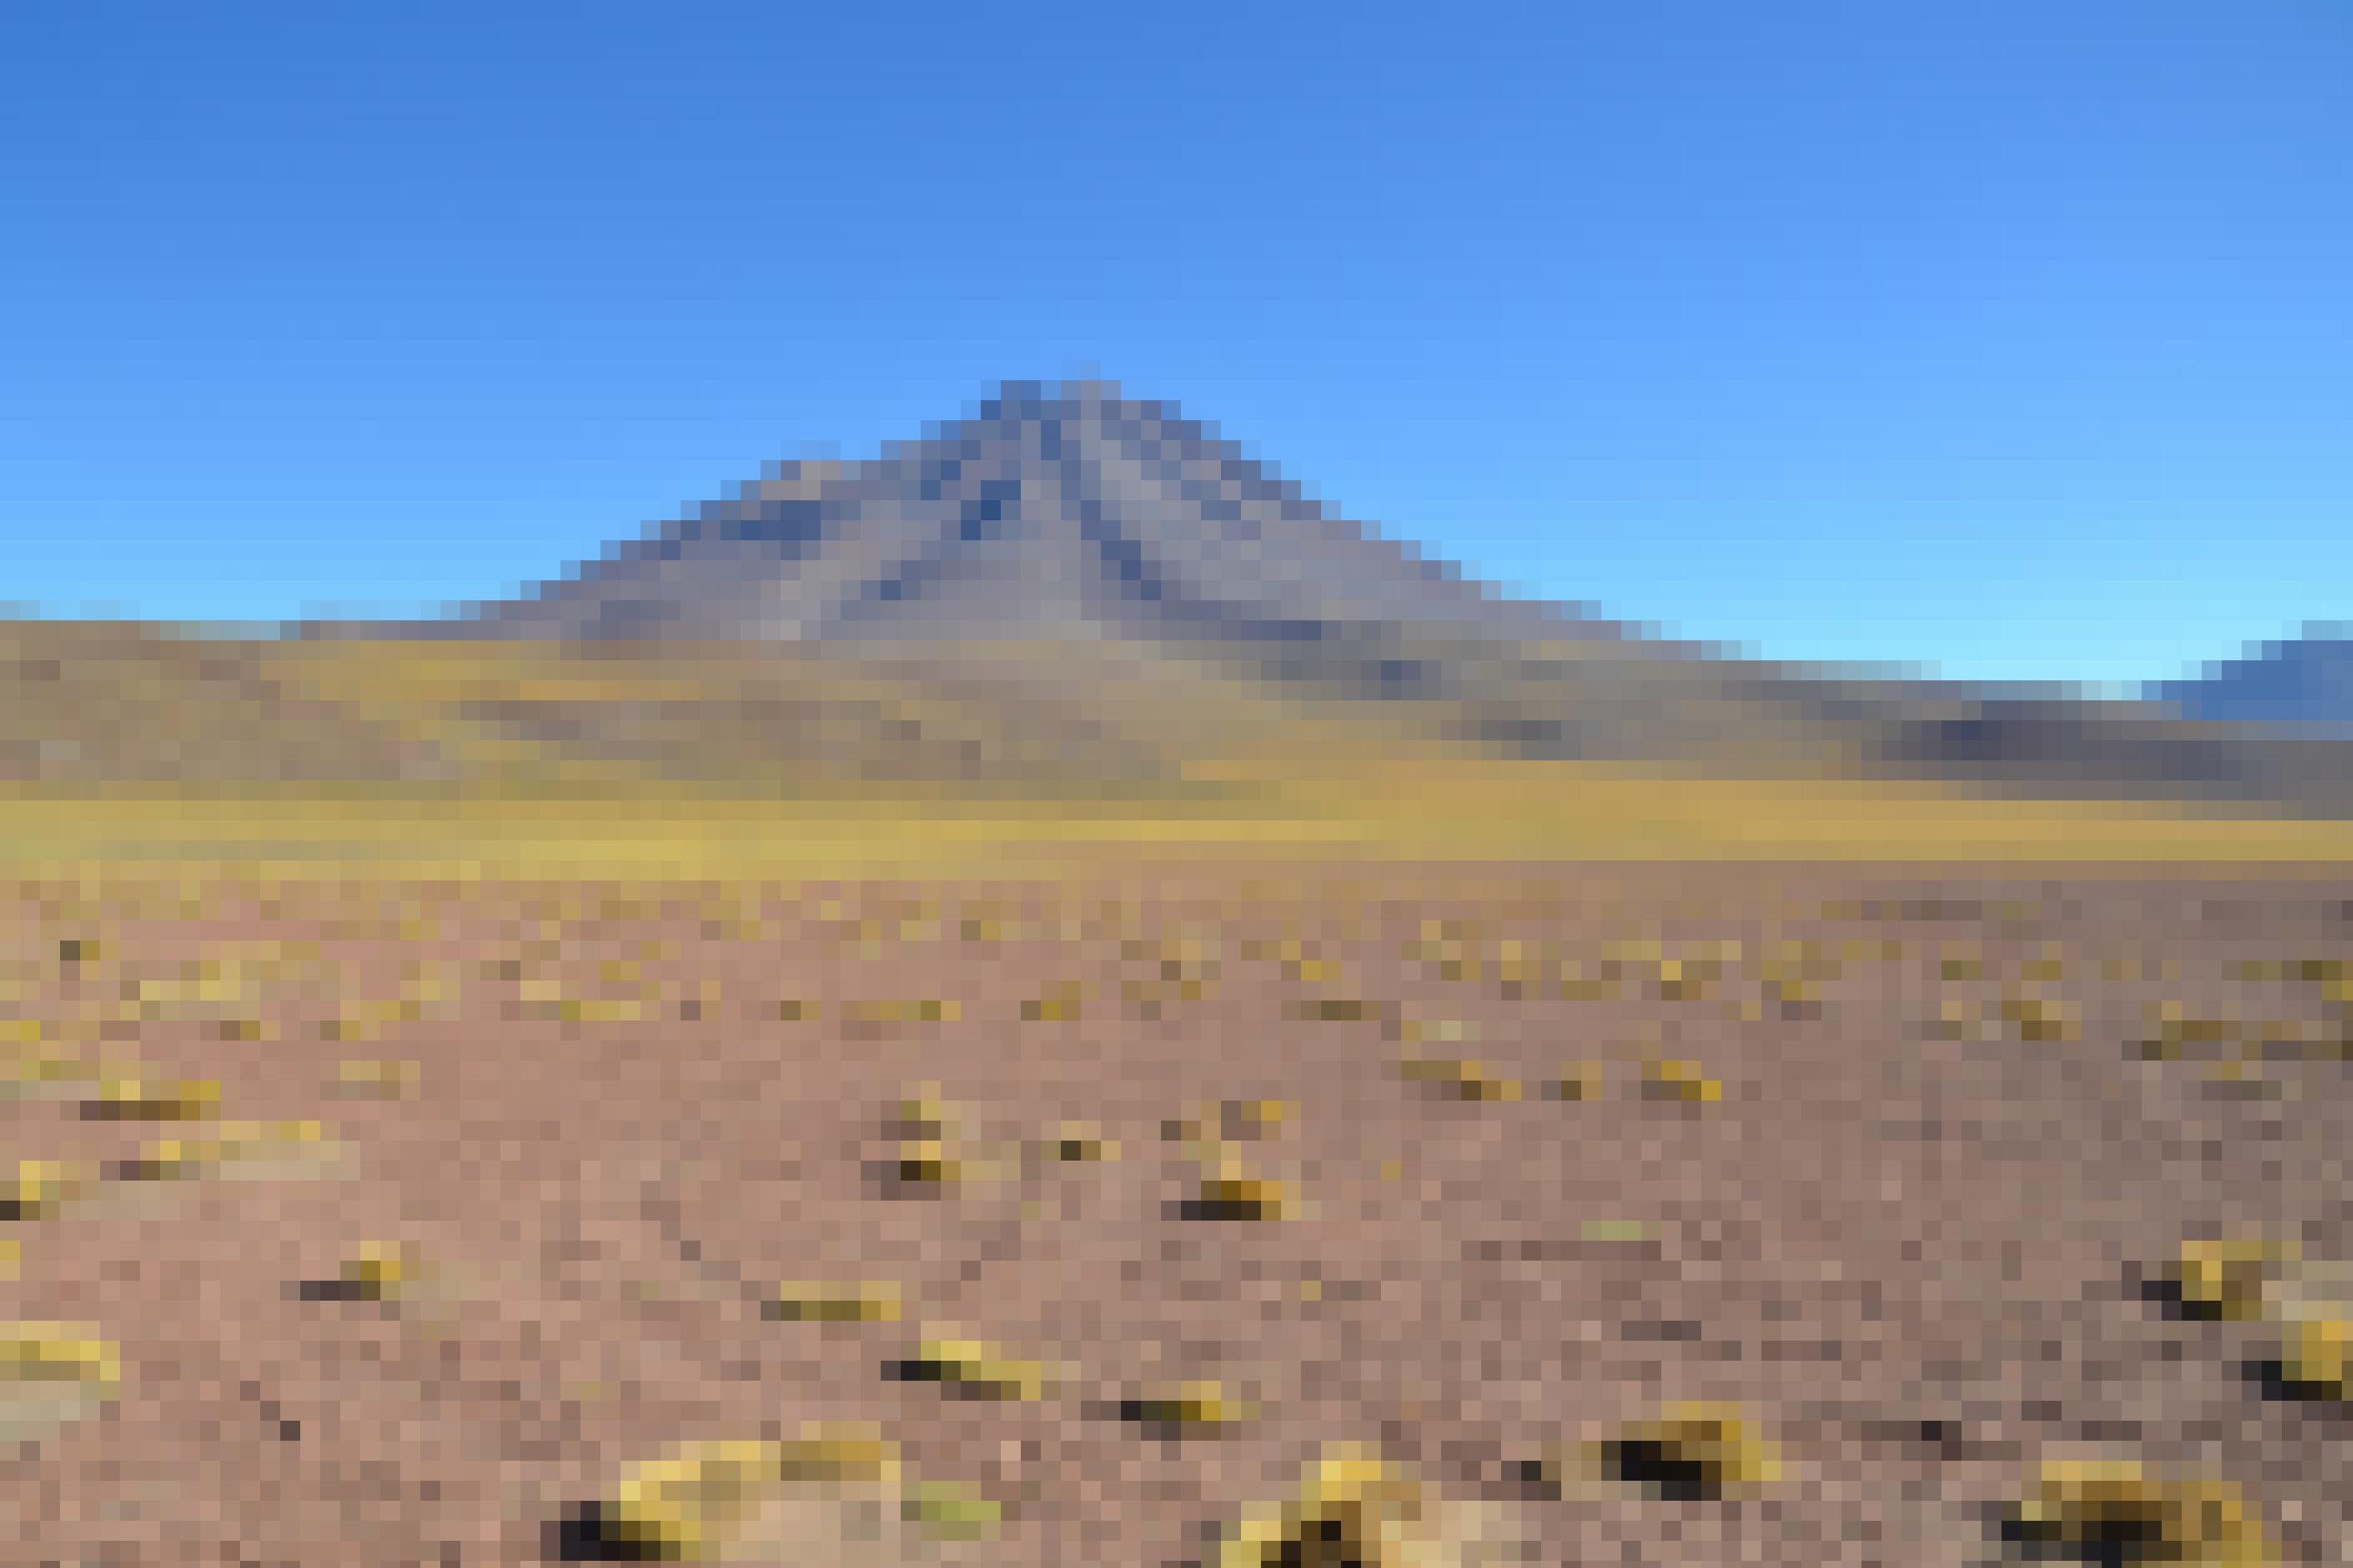 Vereinzelte gelbe Grasbüschel im Vordergrund, inmitten von Sand, im Hintergrund Silhoutte der Anden, Chile, Atacama-Wüste.